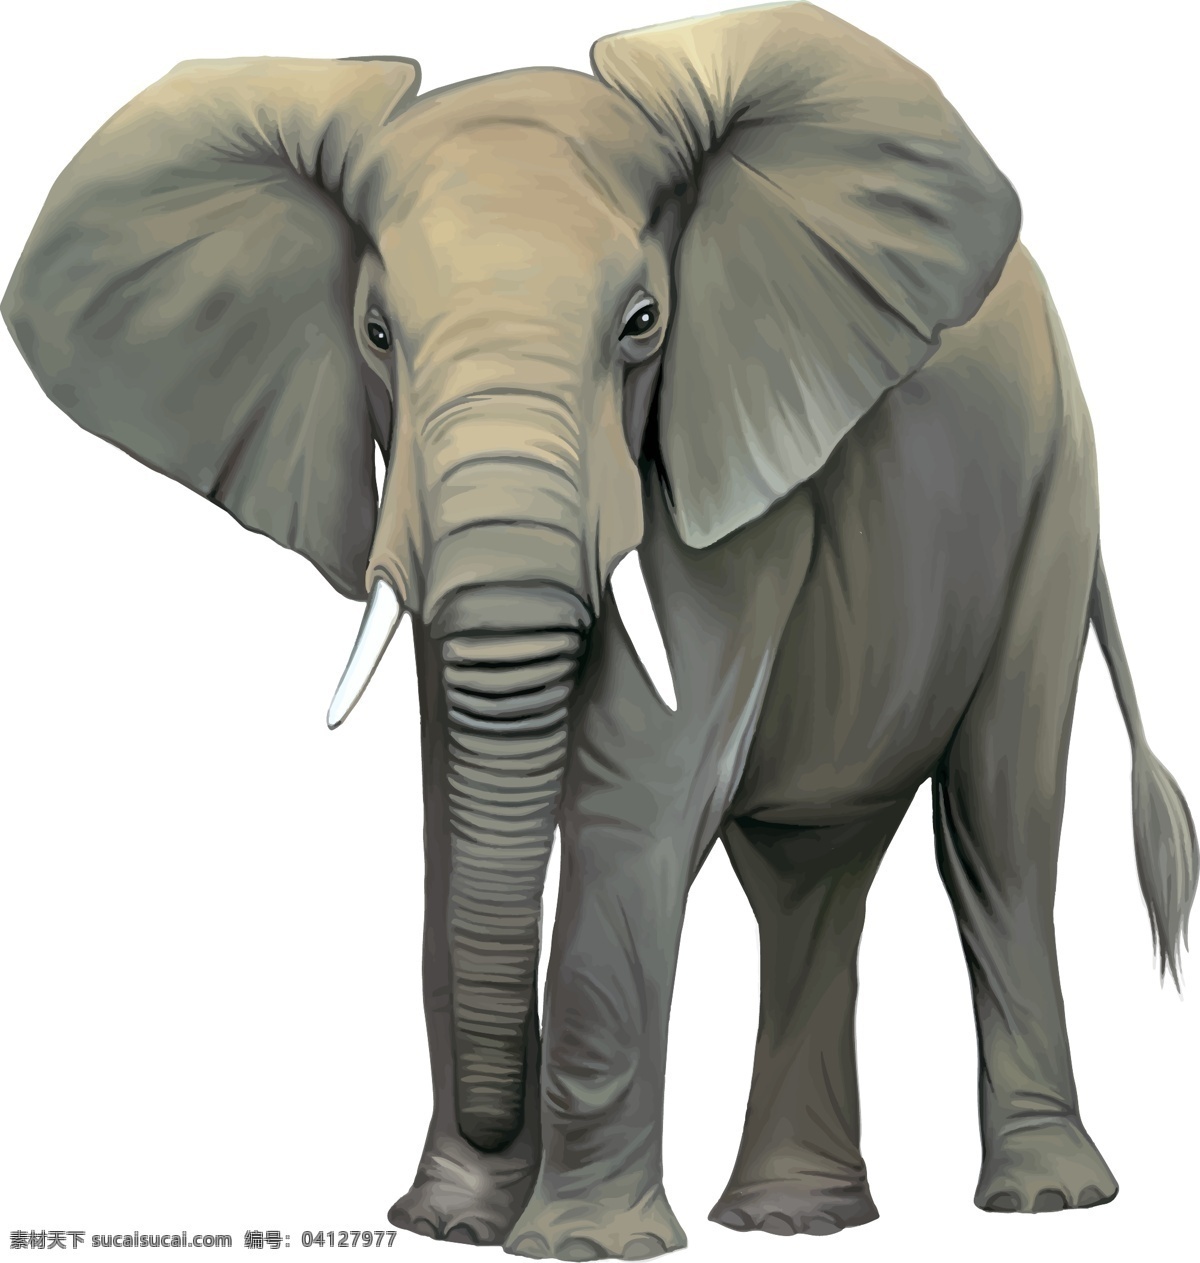 象 大象 大象标志 灰色大象 大笨象 矢量大象 卡通大象 大象卡通画 大象素材 卡通动物 动物元素 手绘大象 大象插画 动物图案 动物图标 大象图标 黑色大象图标 象鼻 动物 生物世界 野生动物